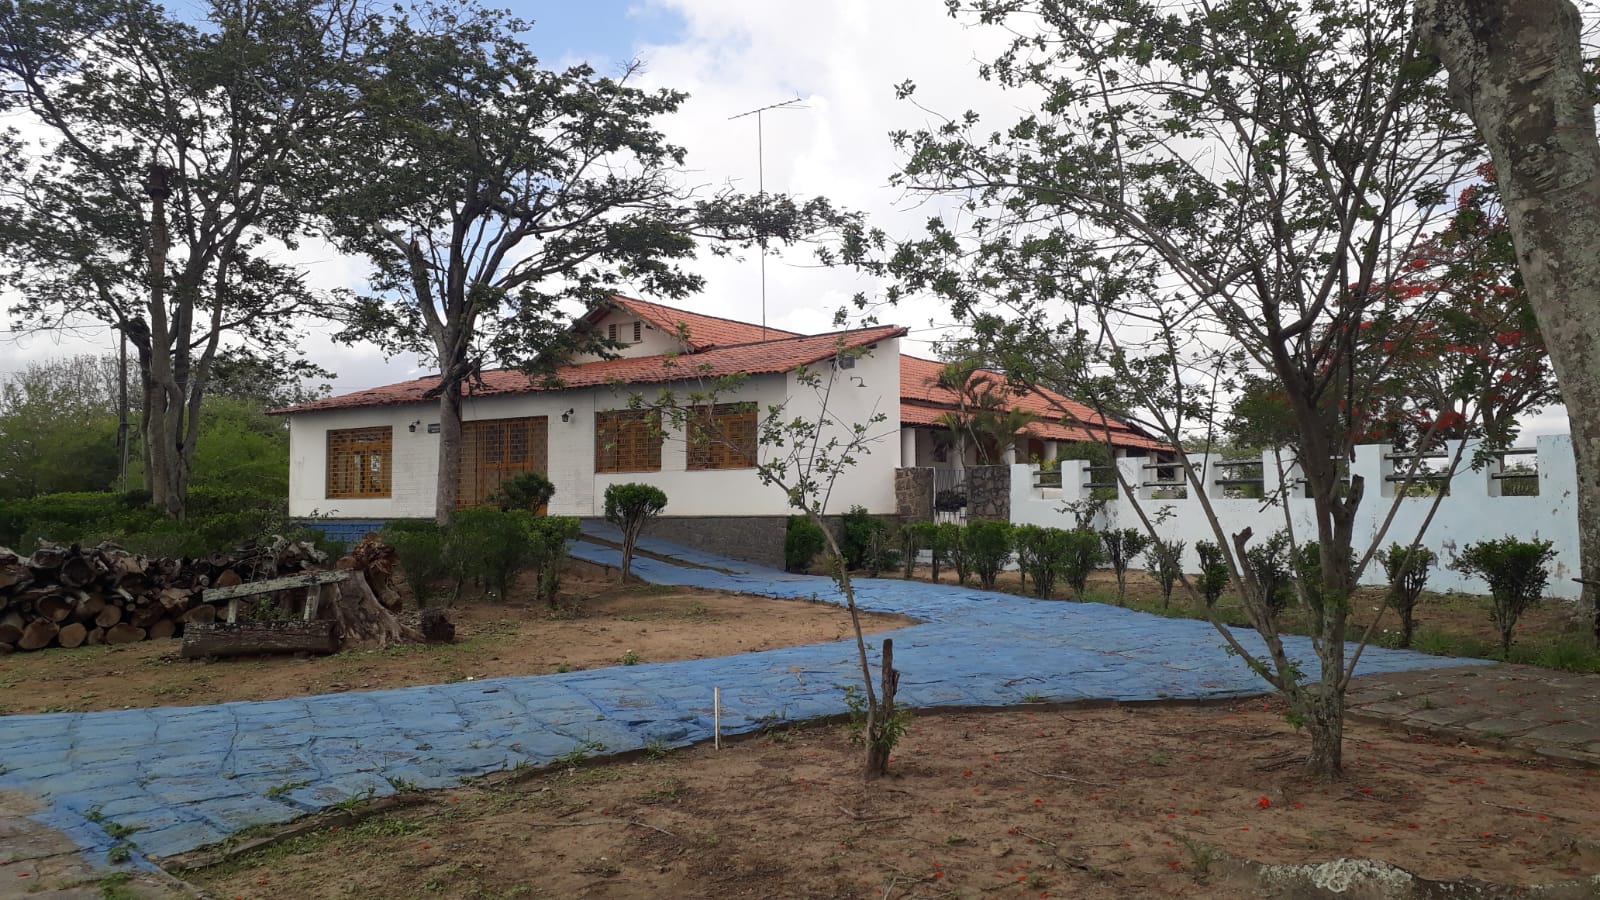 Relatório das atividades desenvolvidas no Memorial Casa Aluízio Campos (MCAC) em 2021